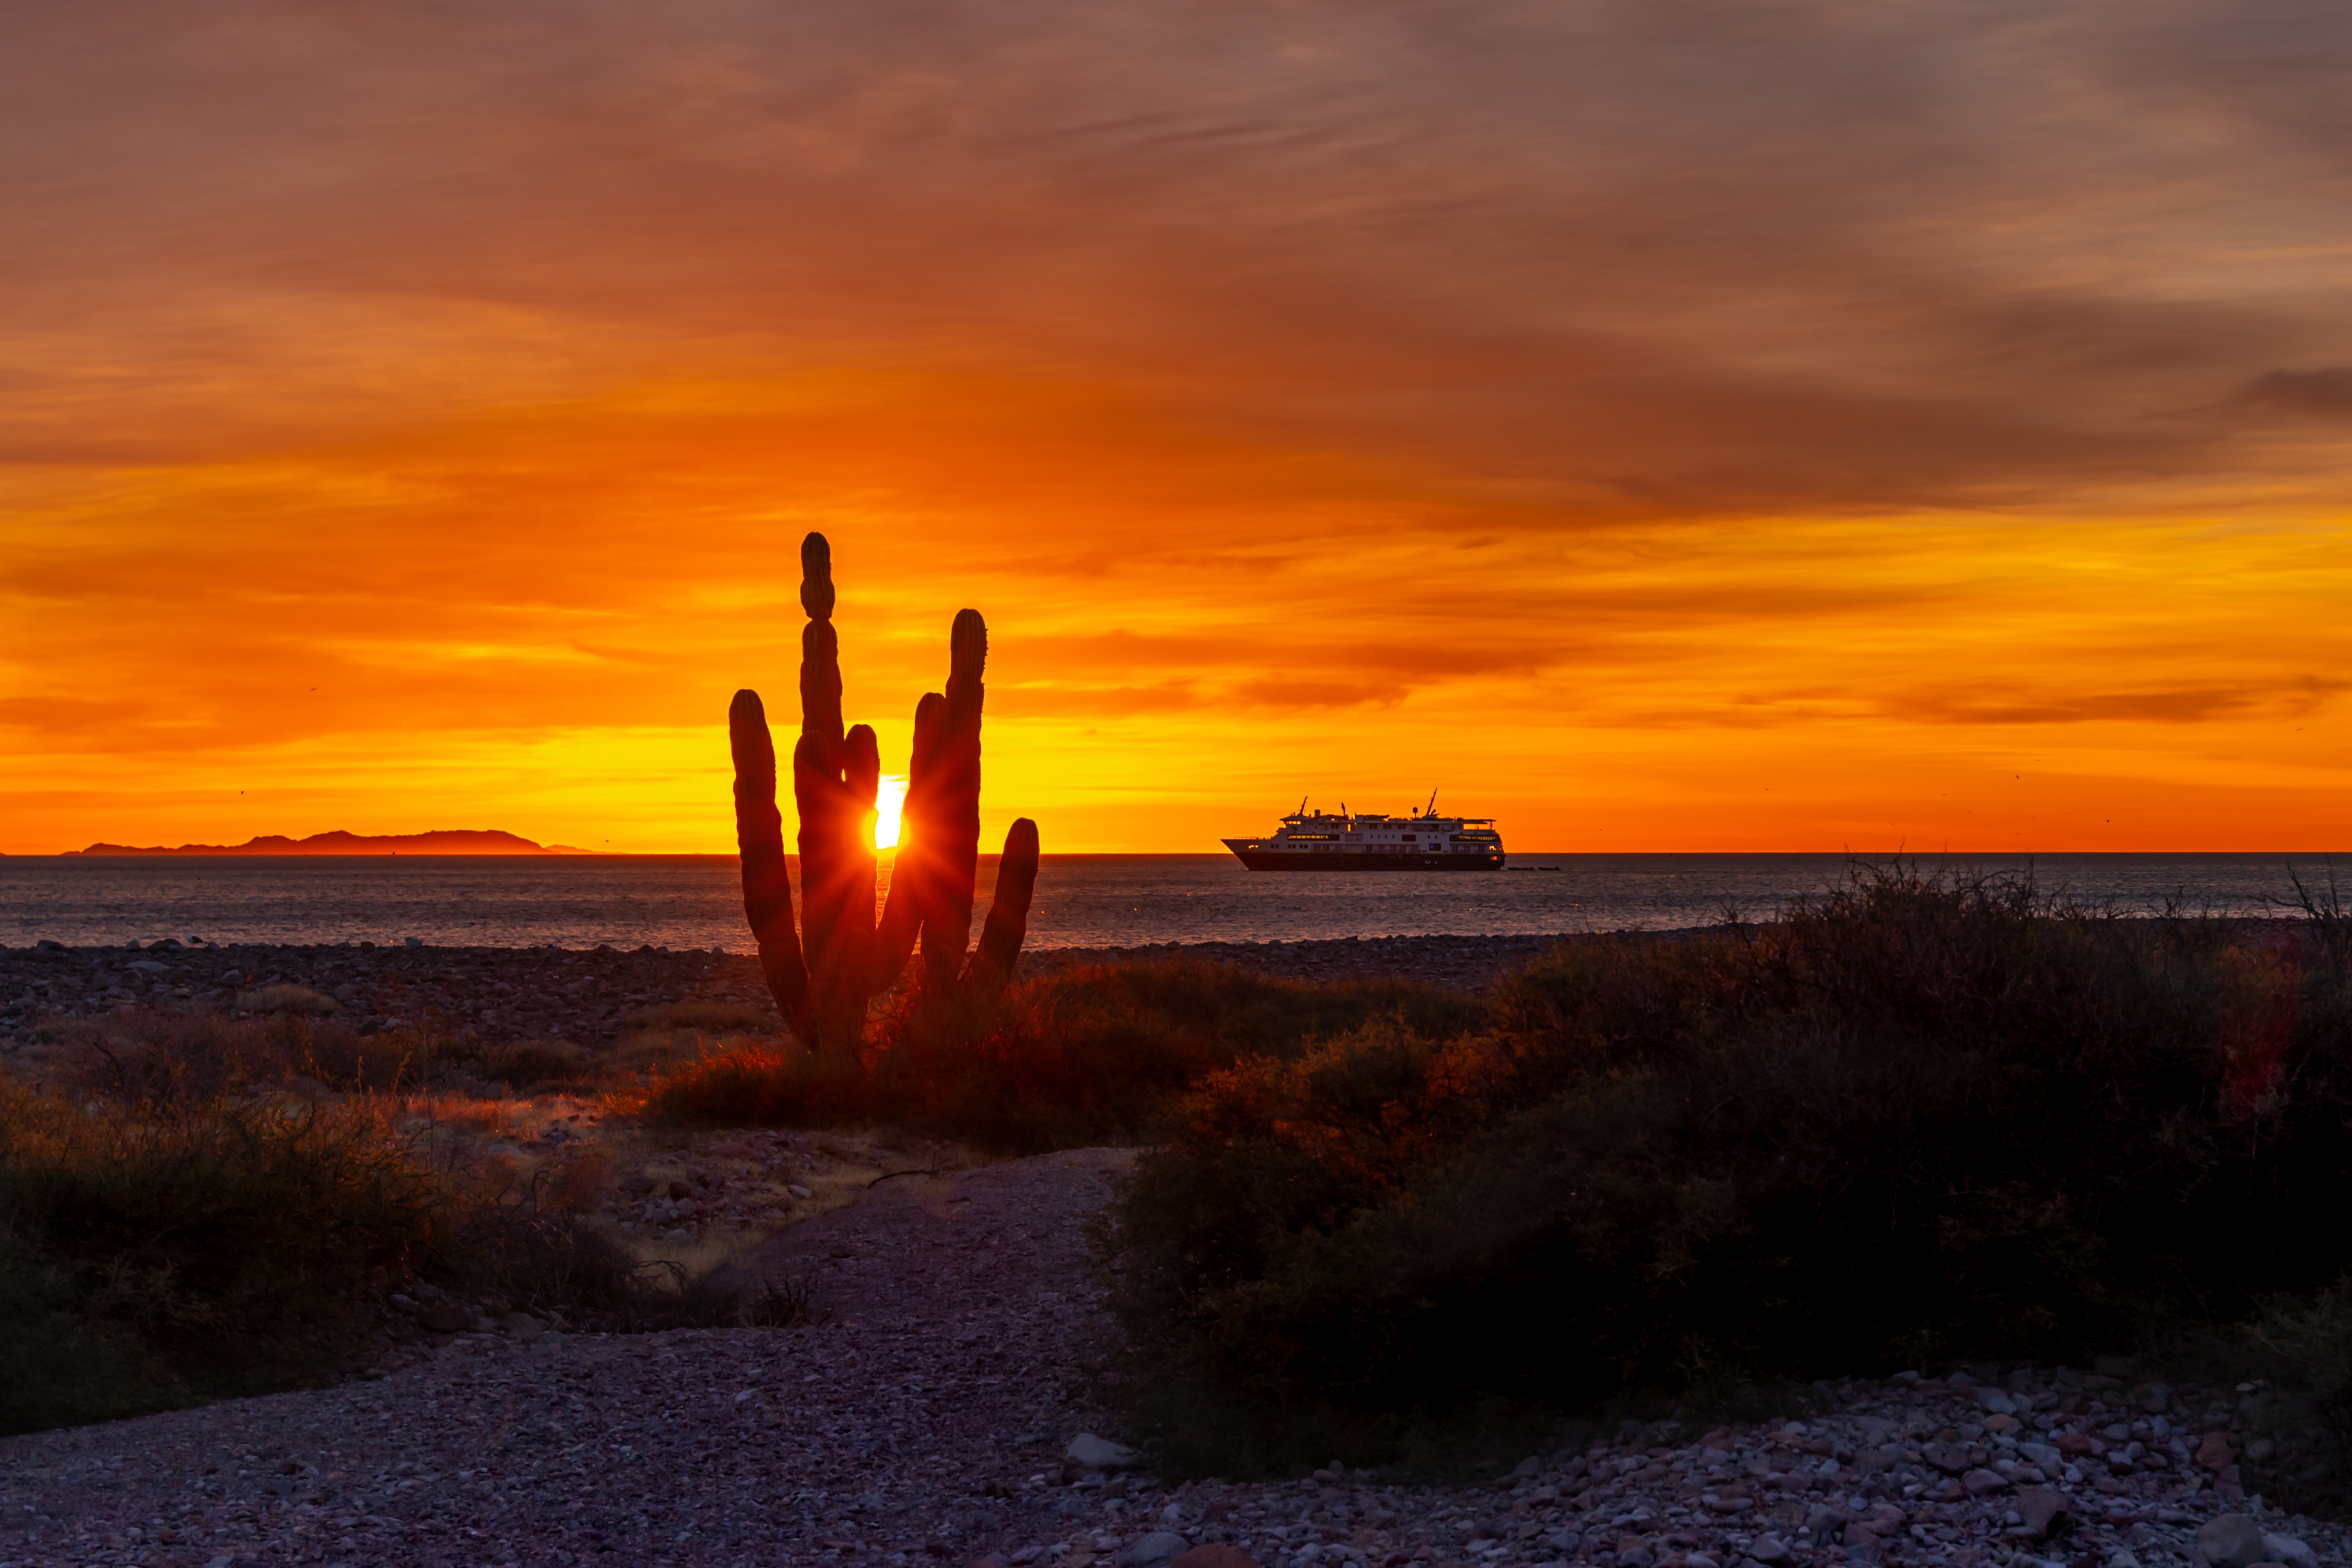 The sun peaks through a cardon cactus at sunrise